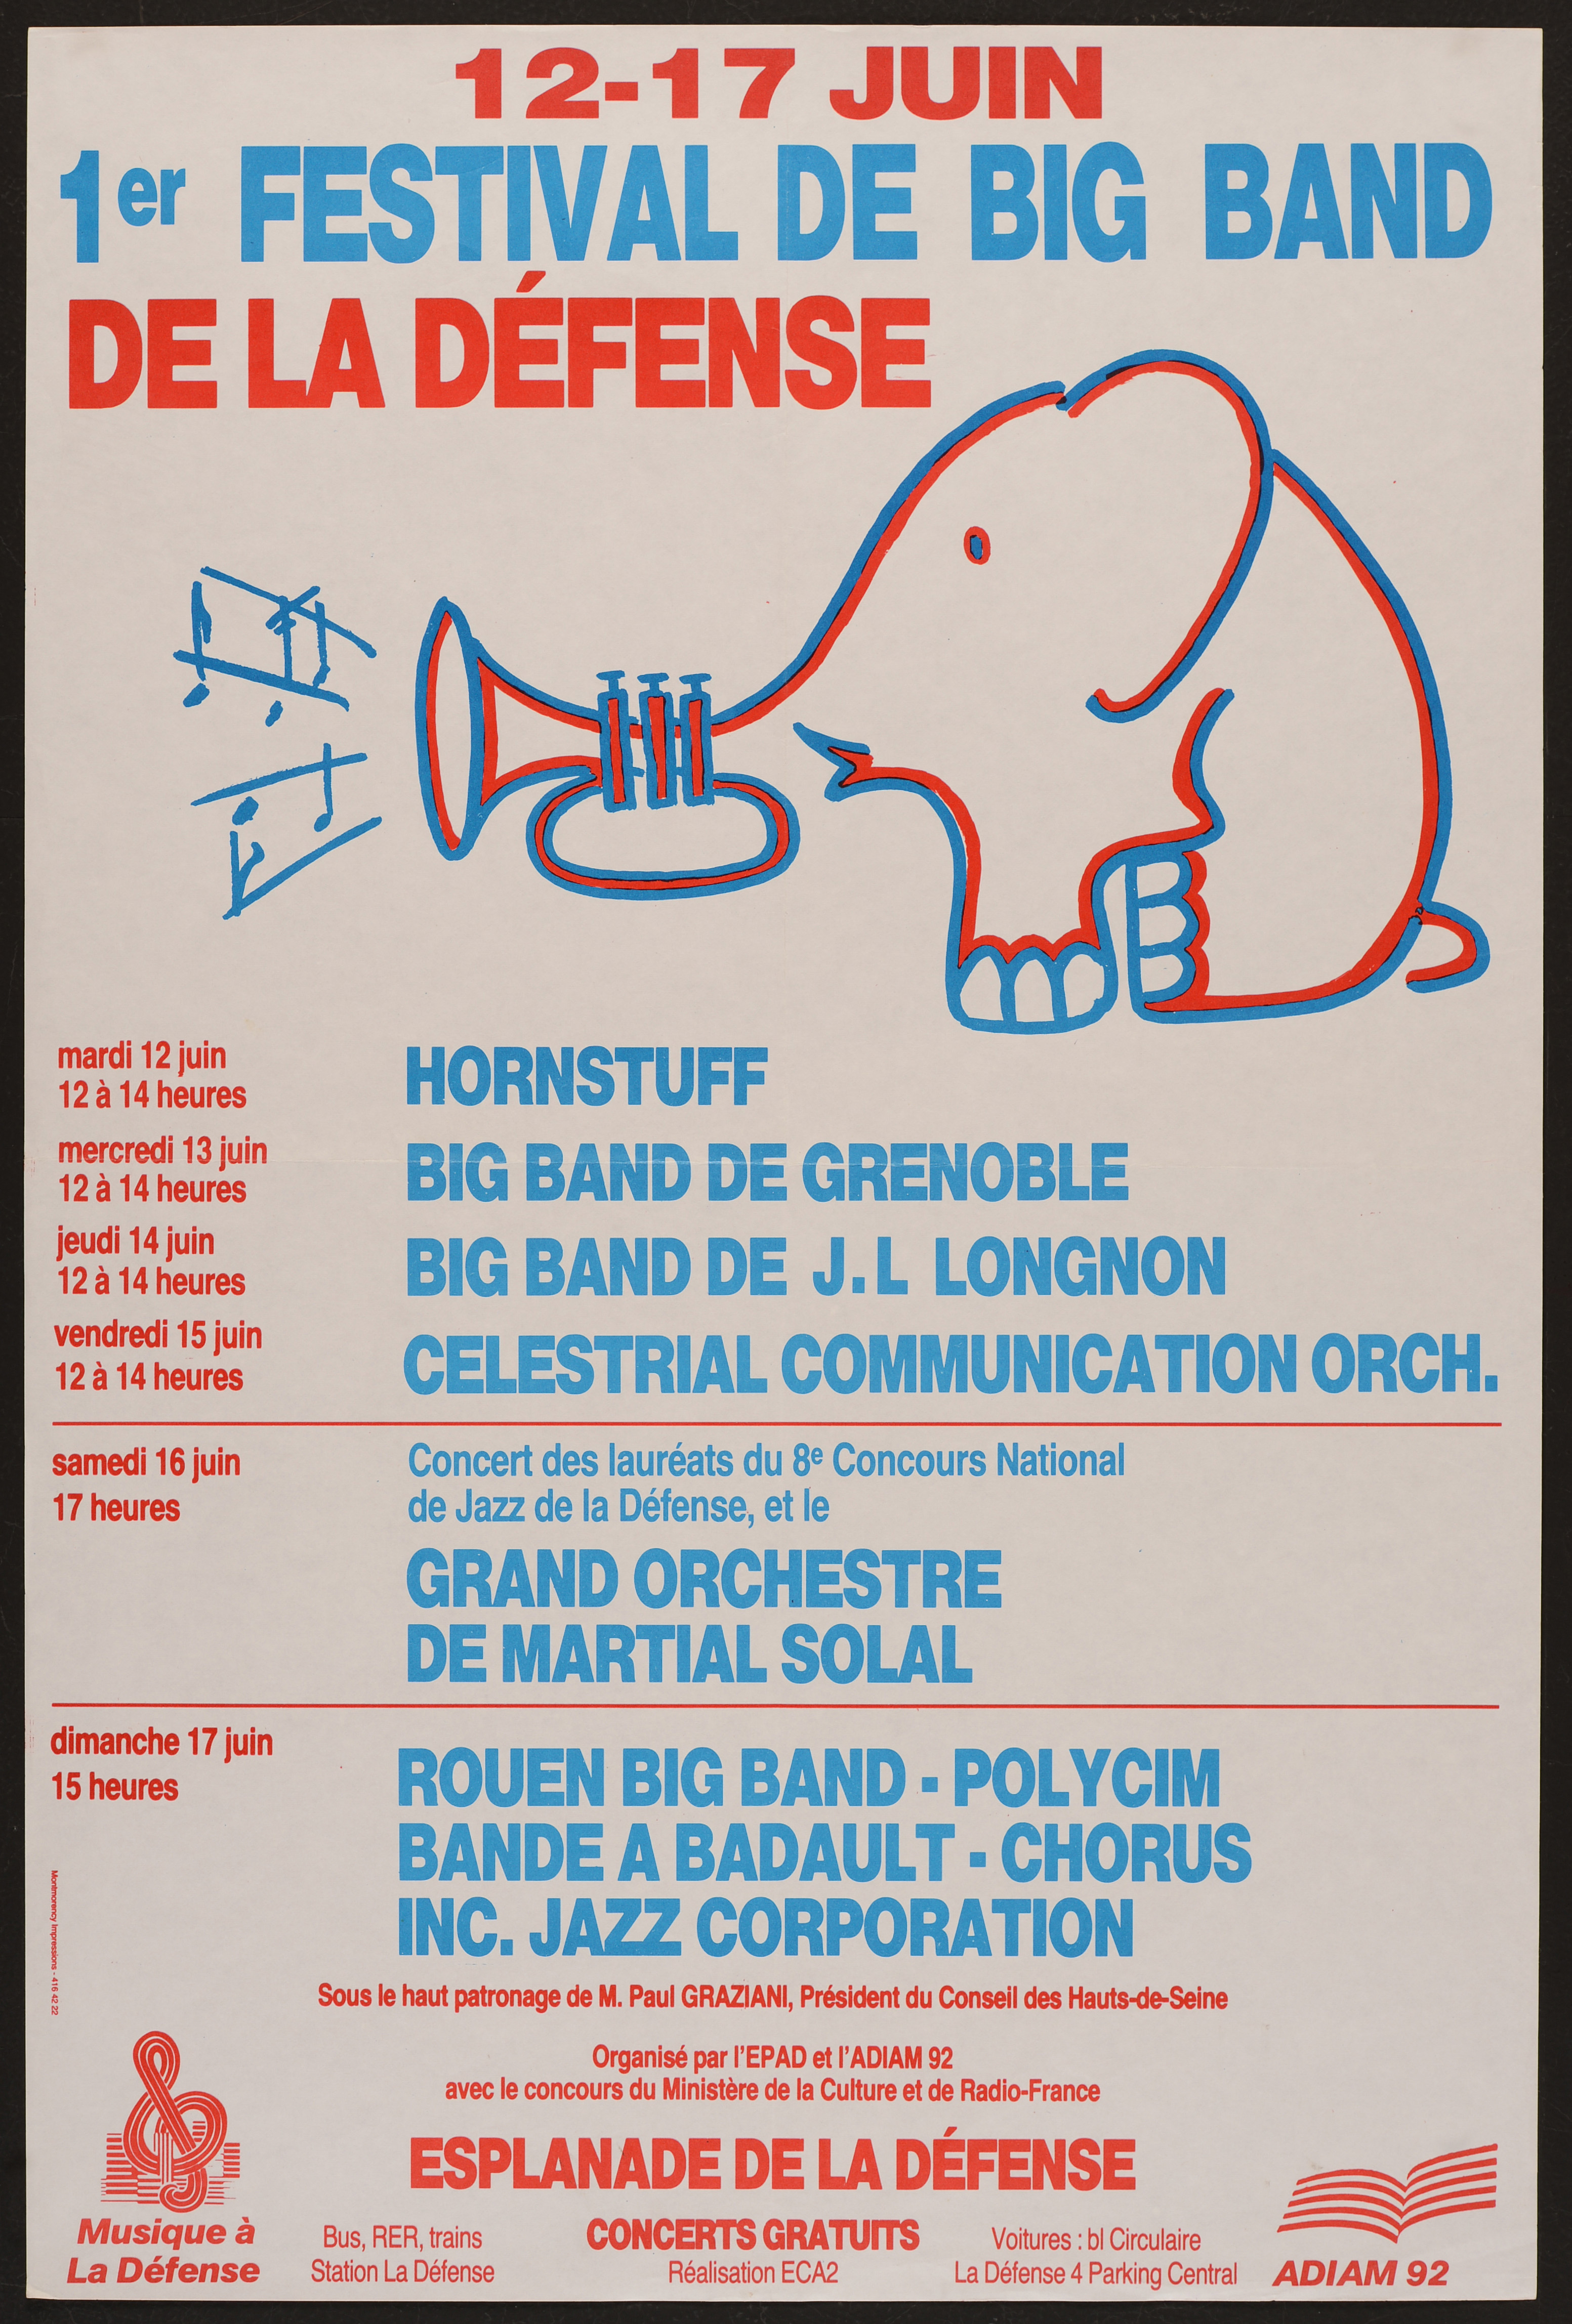 12-17 juin. 1er Festival de Big Band à la Défense. - Affiche ill. coul. ; 60 x 40 cm.